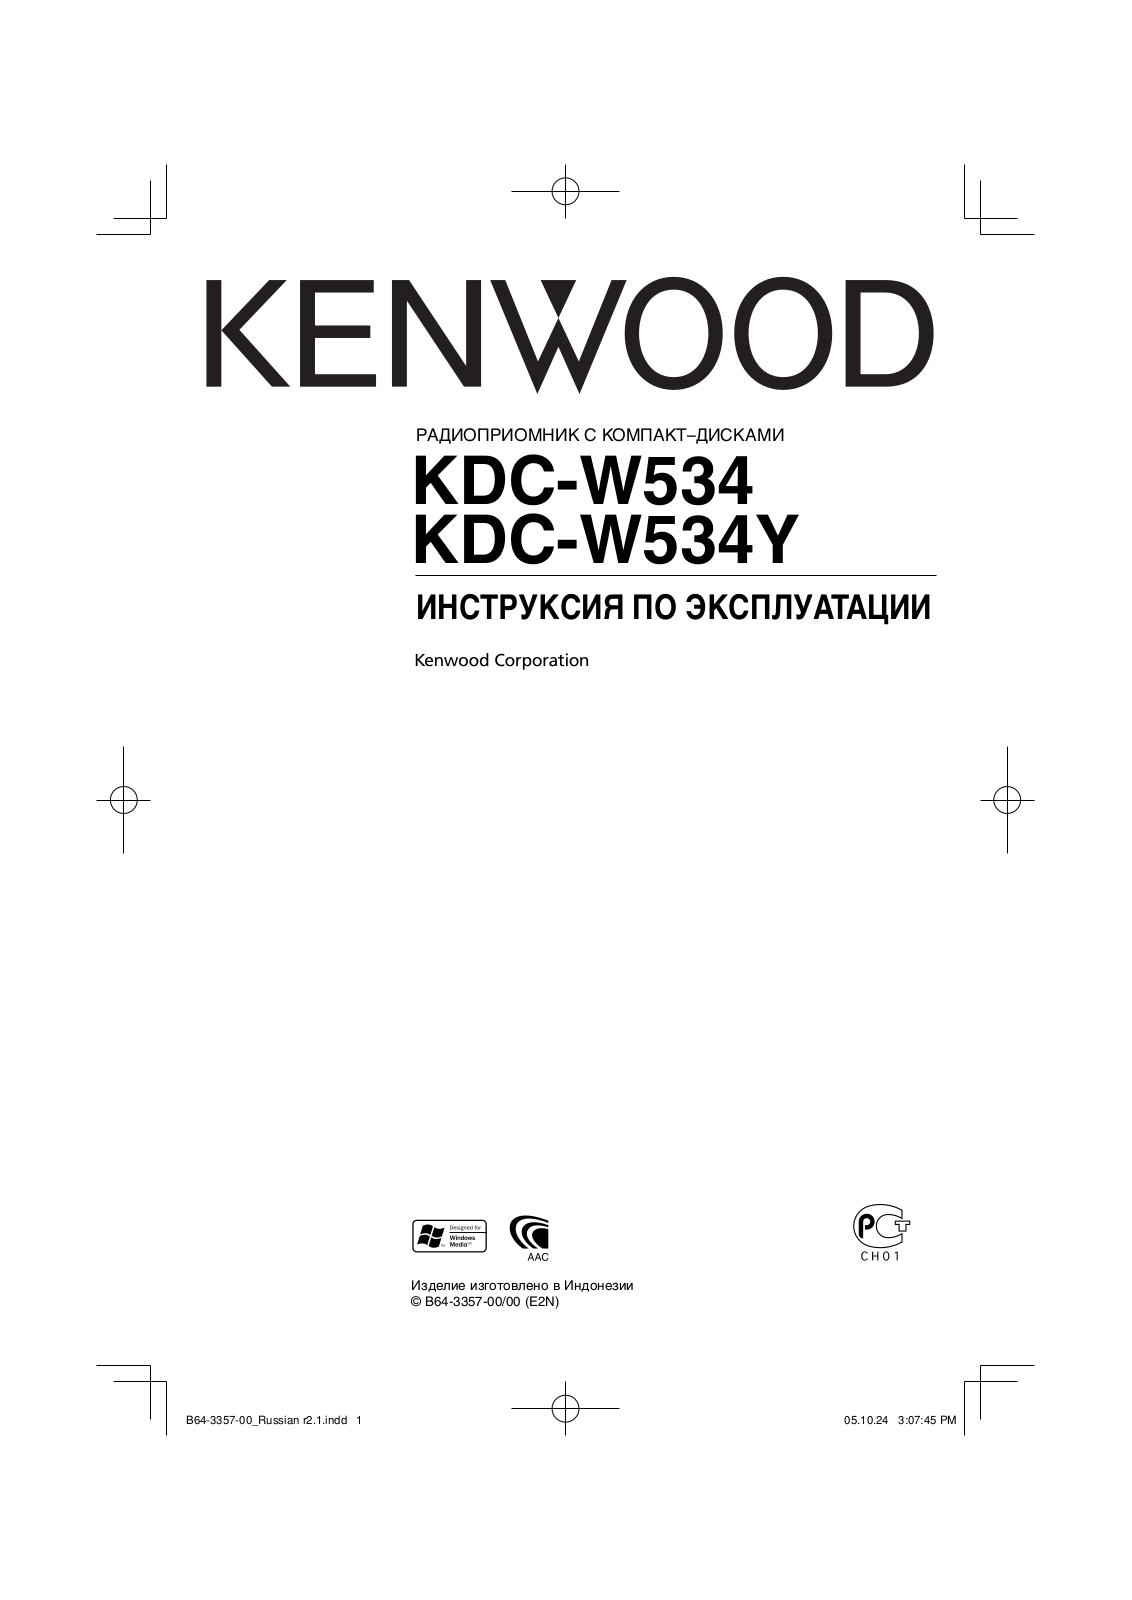 Kenwood KDC-W534 User Manual